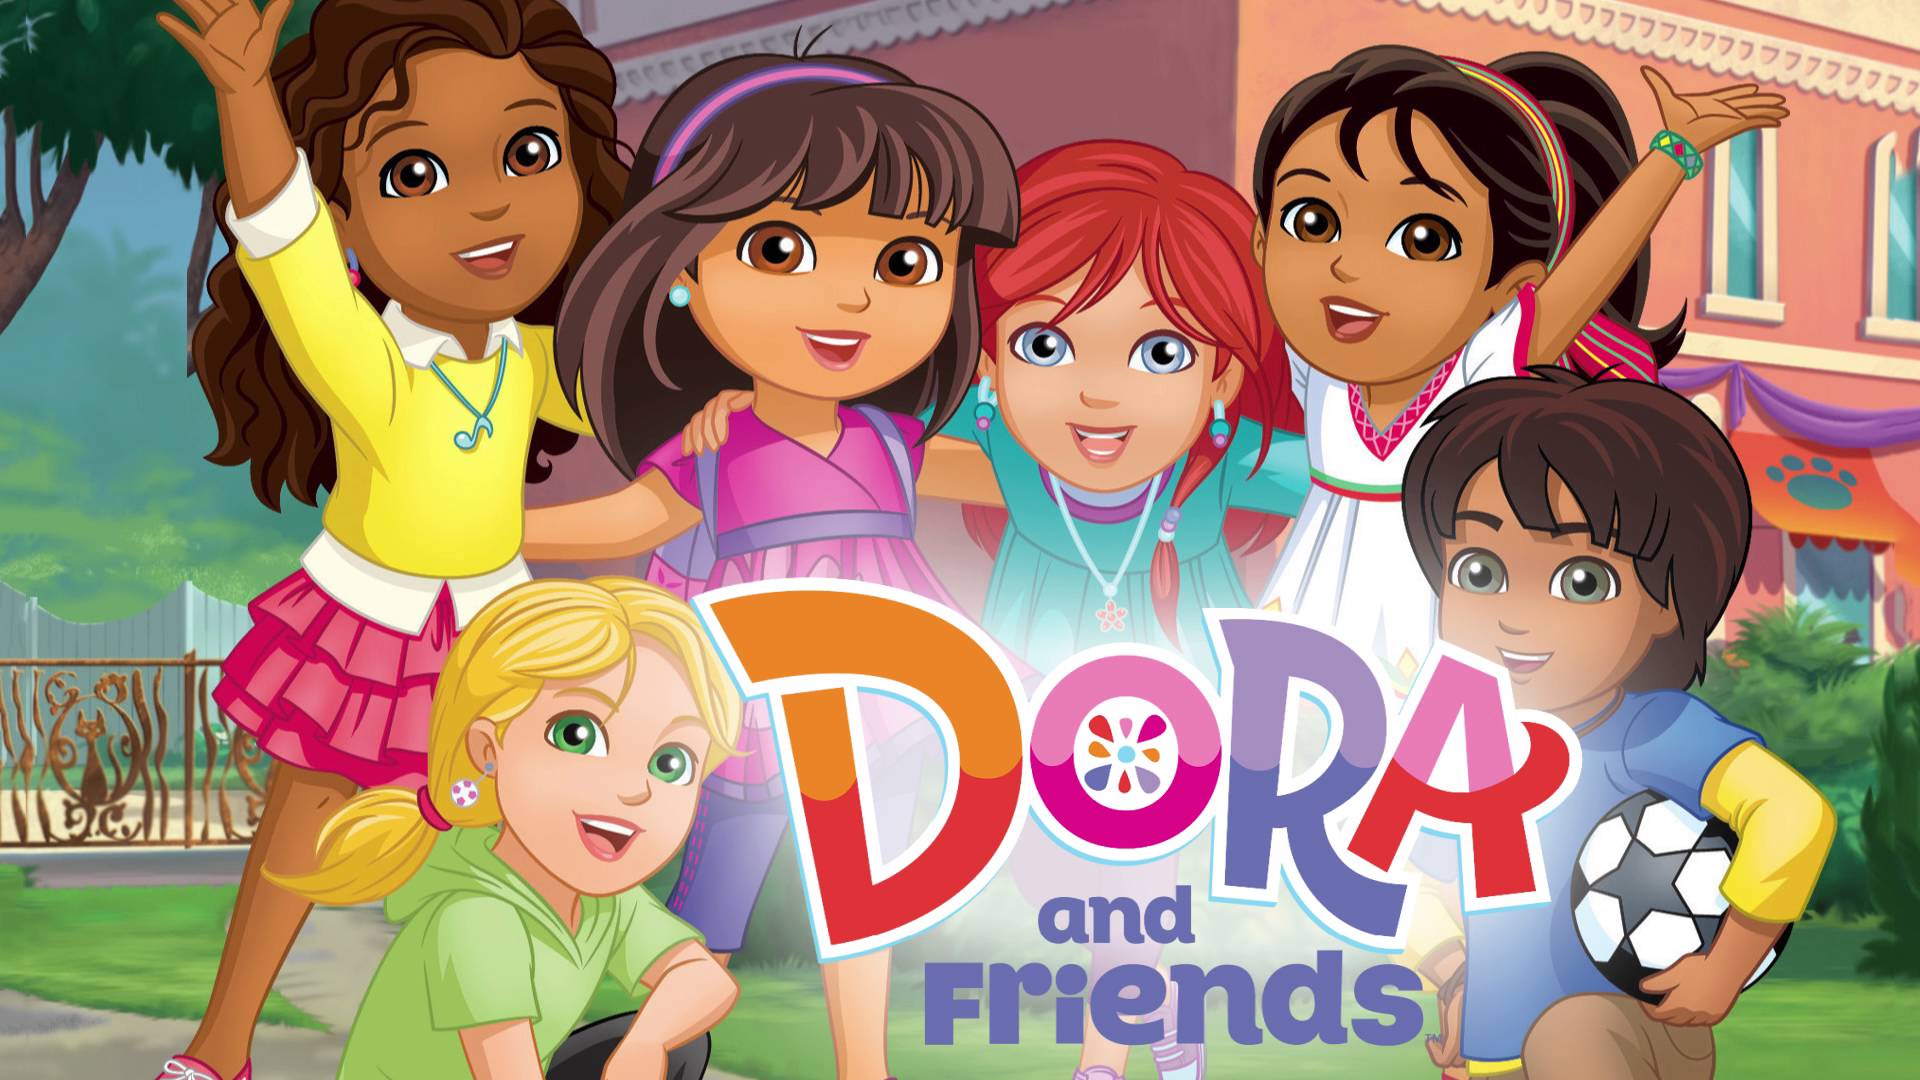 Personaggi Dora and friends: in città